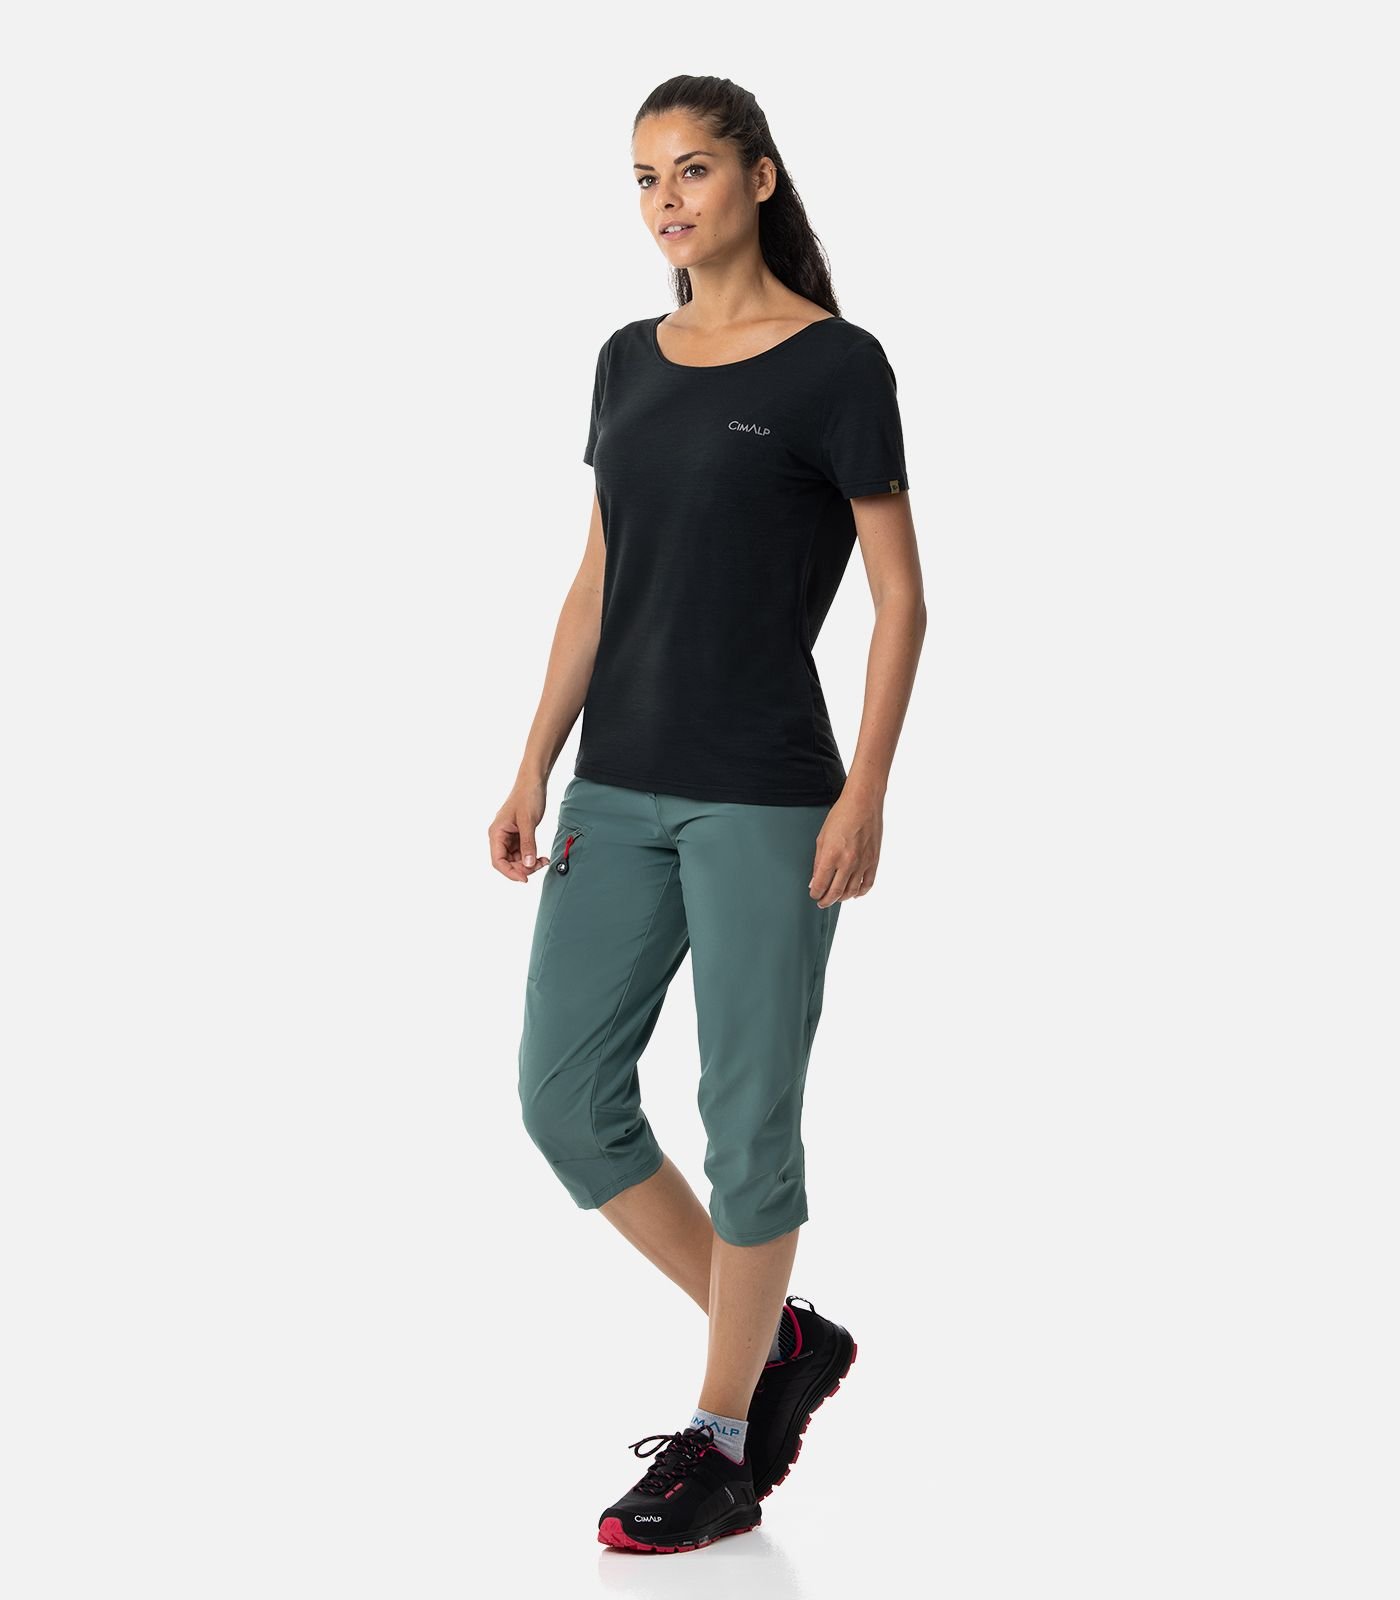 MERINO wool T-shirt - Short sleeves